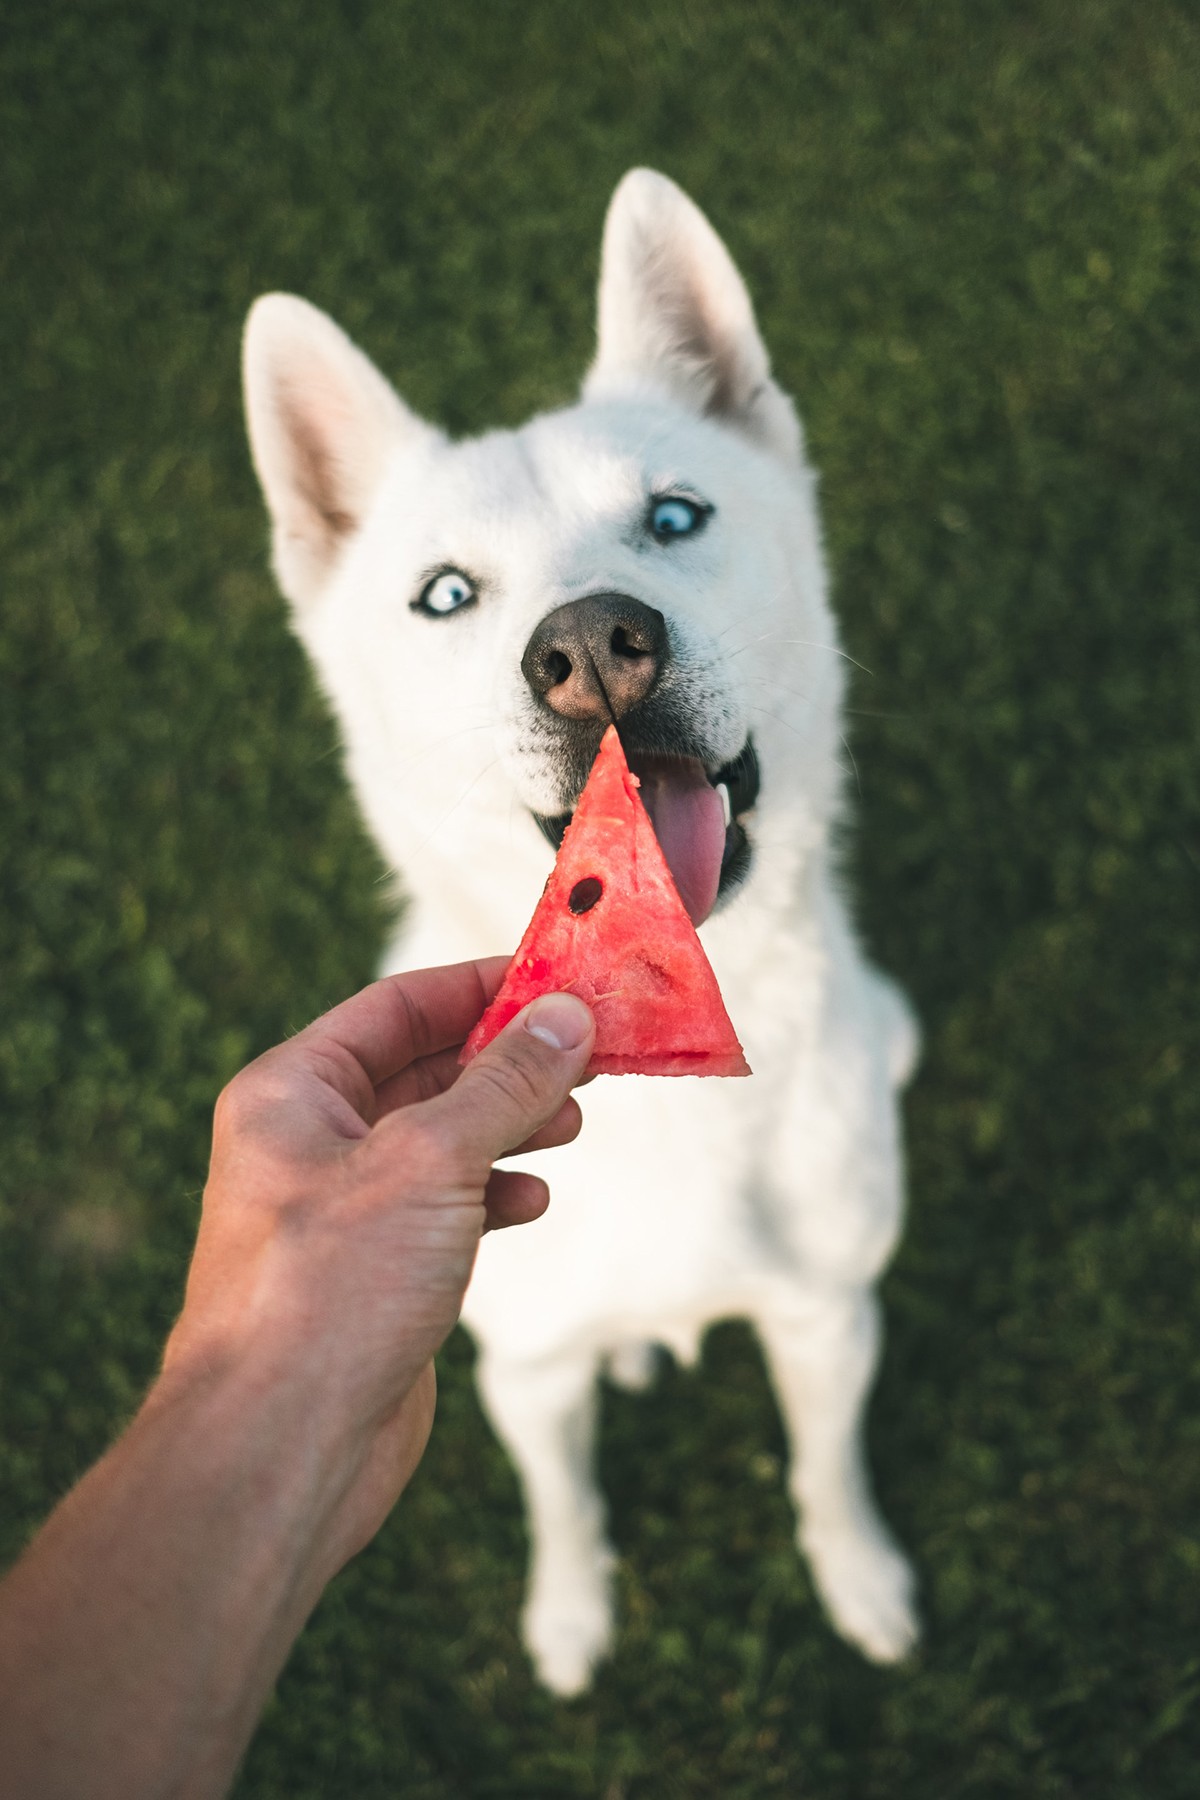 Todas as frutas sem sementes e caroços, com exceção da uva e da carambola, podem ser oferecidas aos cachorros (Foto:  Unplash/CreativeCommons/Marek Szturc)